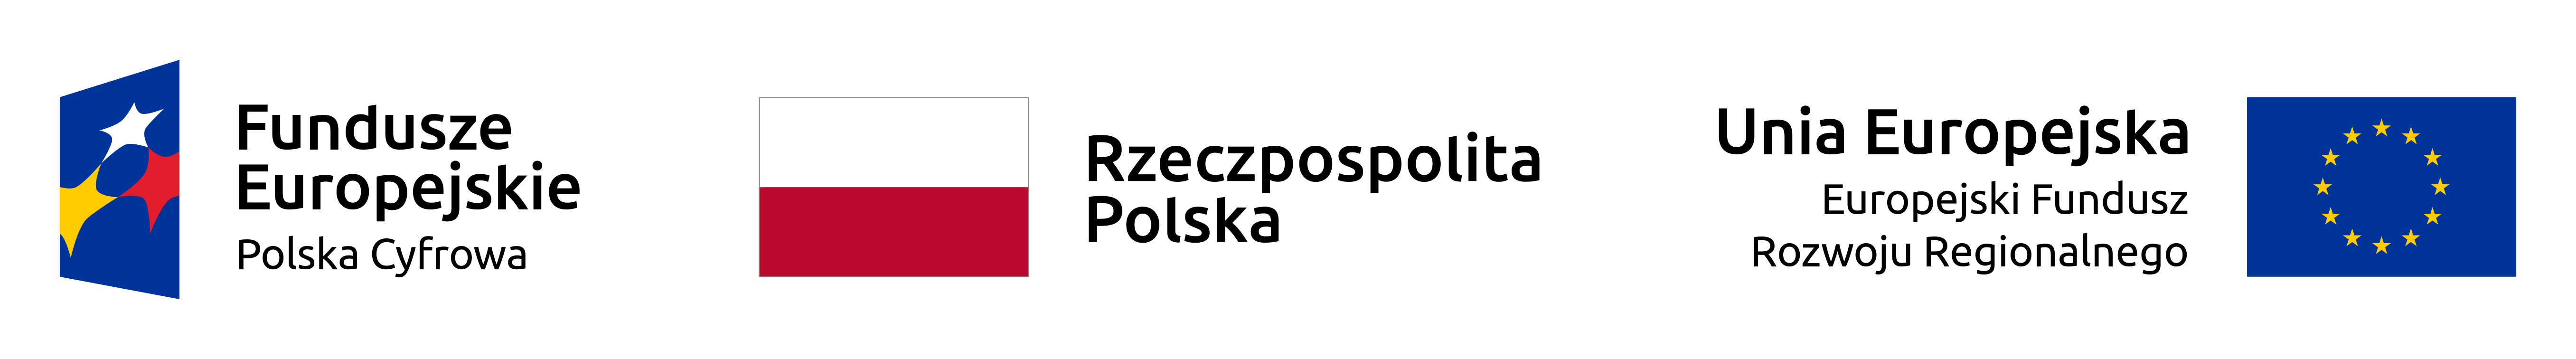 Fundusze Europejskie, Rzeczpospolita Polska, UE - logotypy